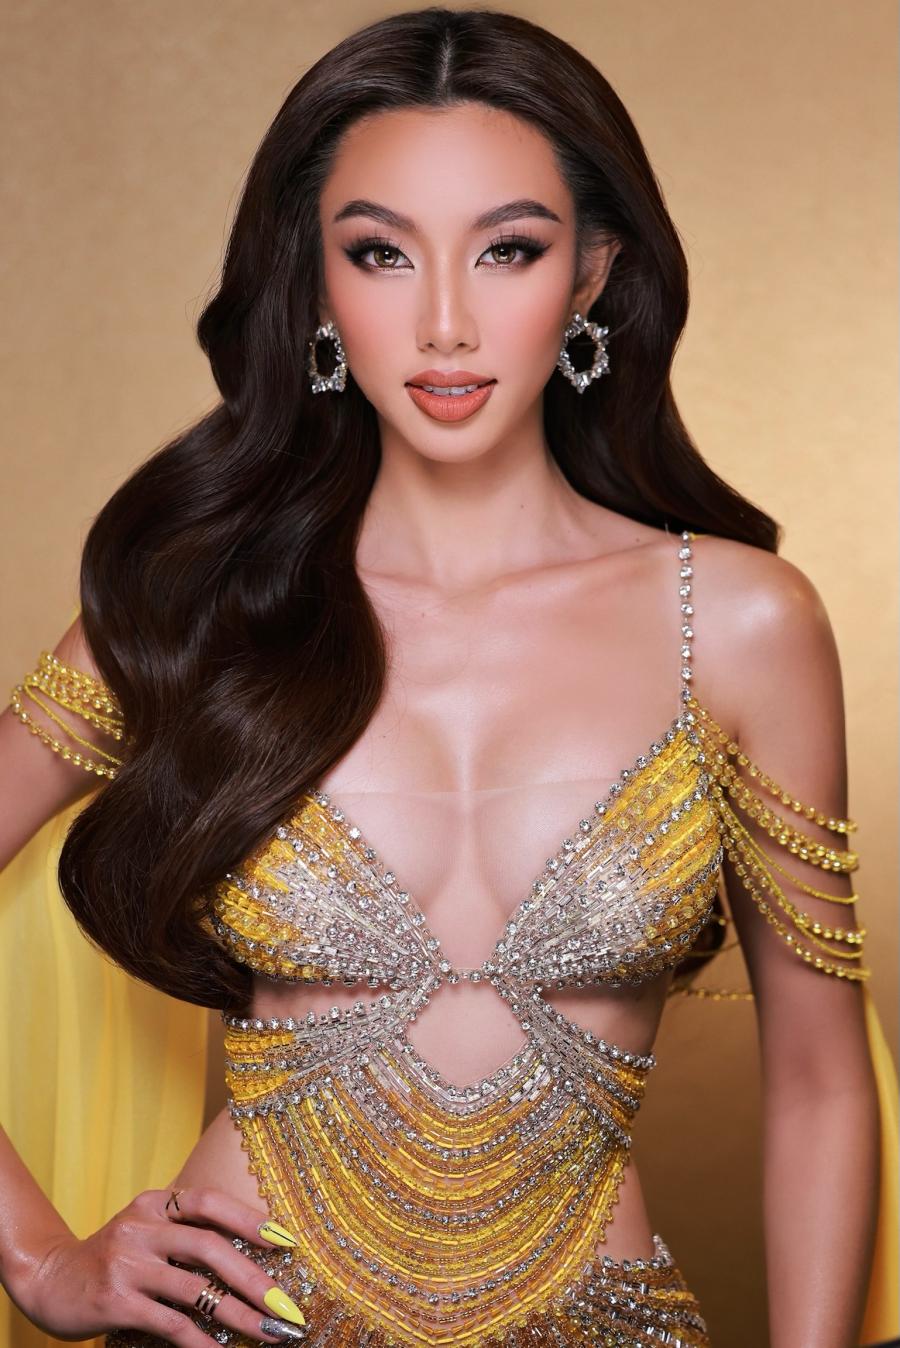 Thiên Ân được ví như nữ thần với váy xuyên thấu đêm bán kết Hoa hậu Hoà bình quốc tế - 6